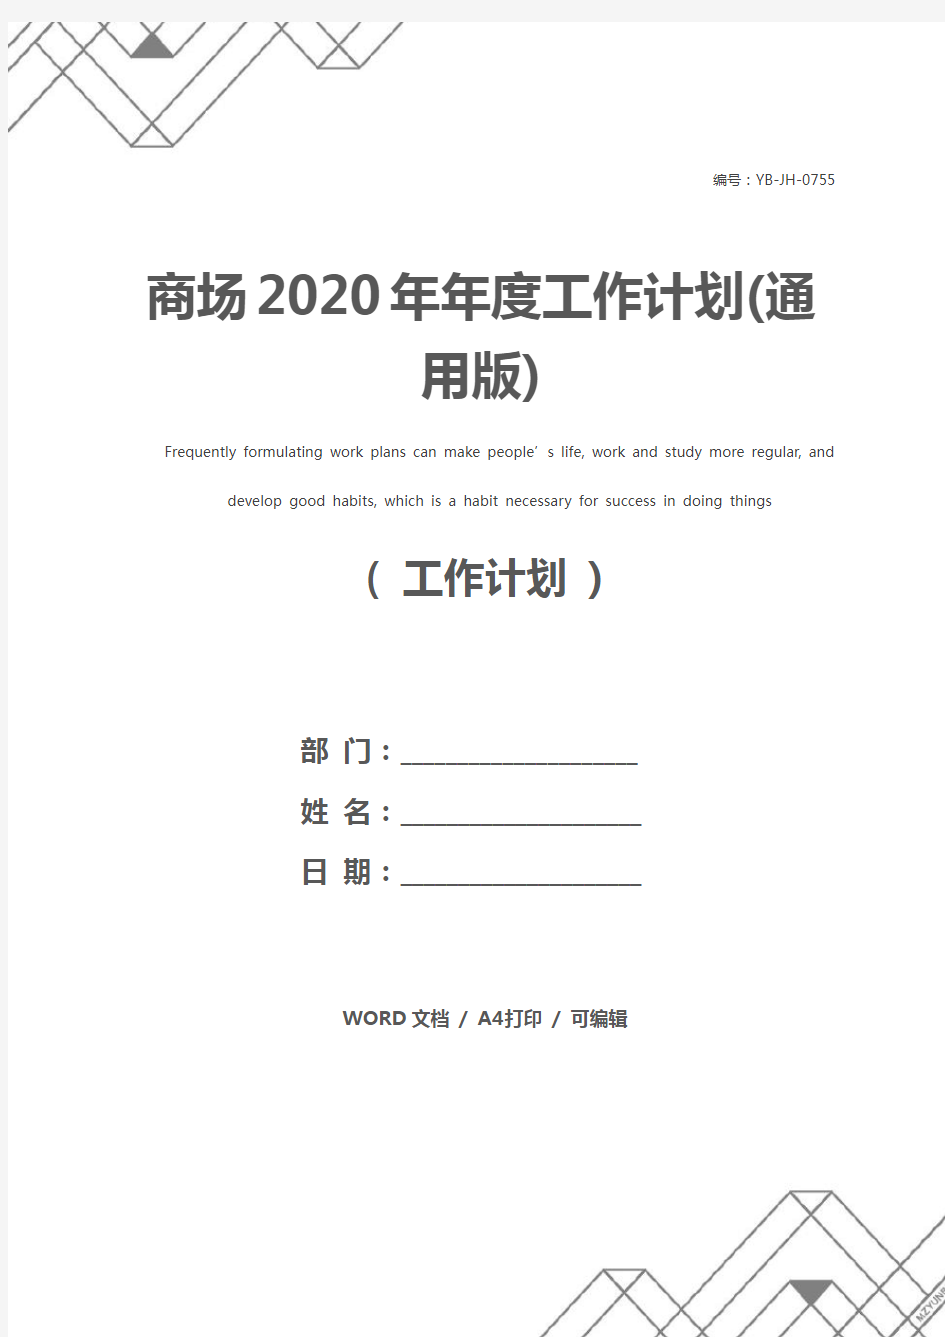 商场2020年年度工作计划(通用版)